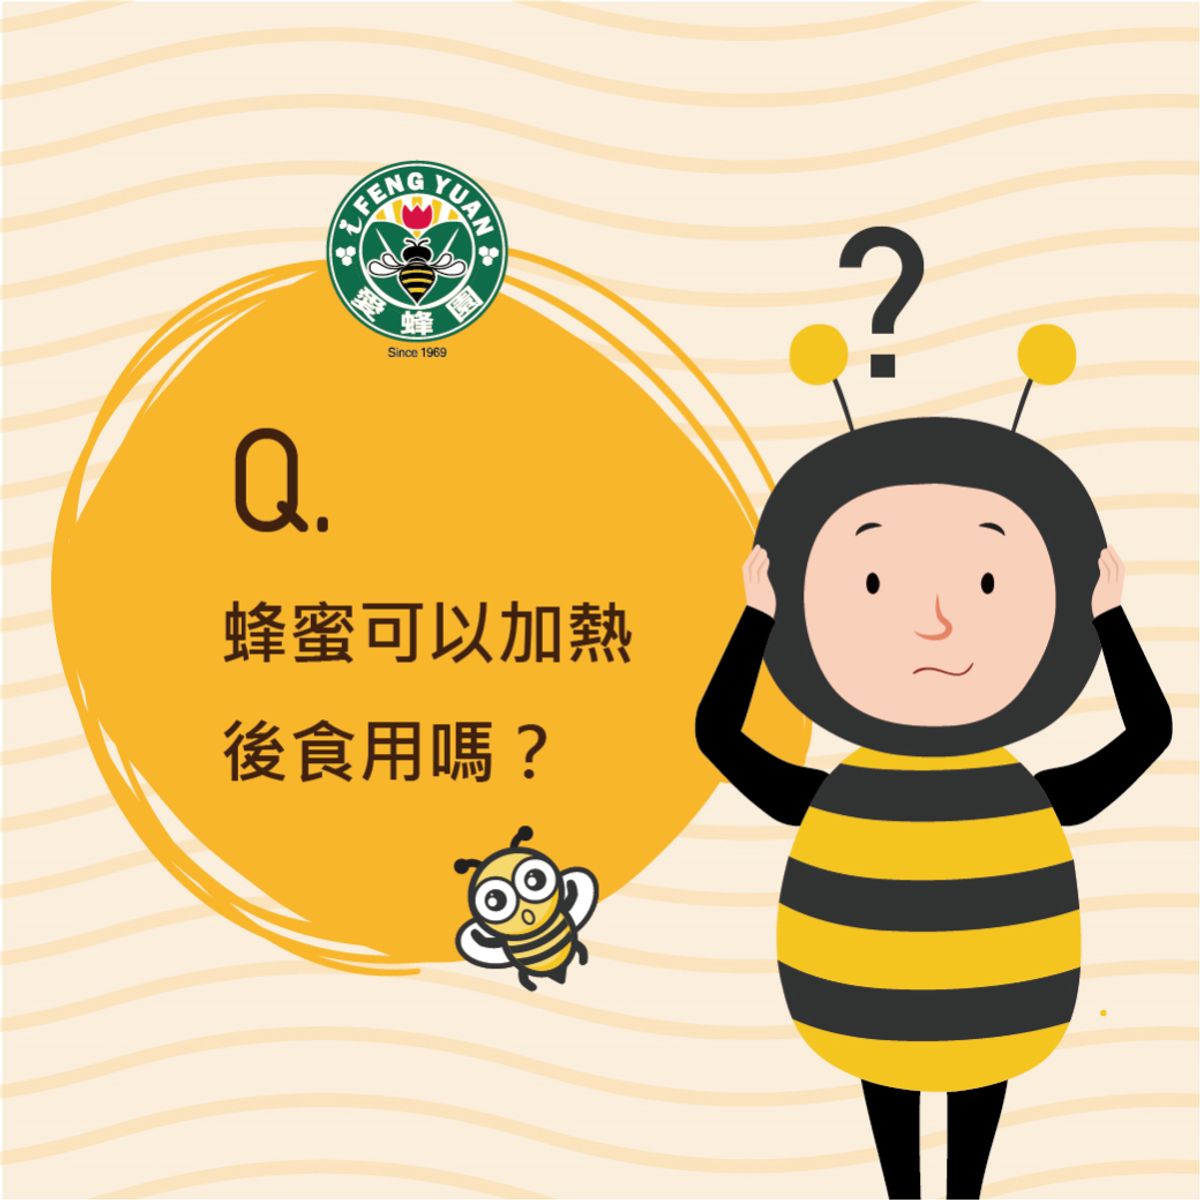 【愛蜂園小學堂】蜂蜜可不可以加熱使用?